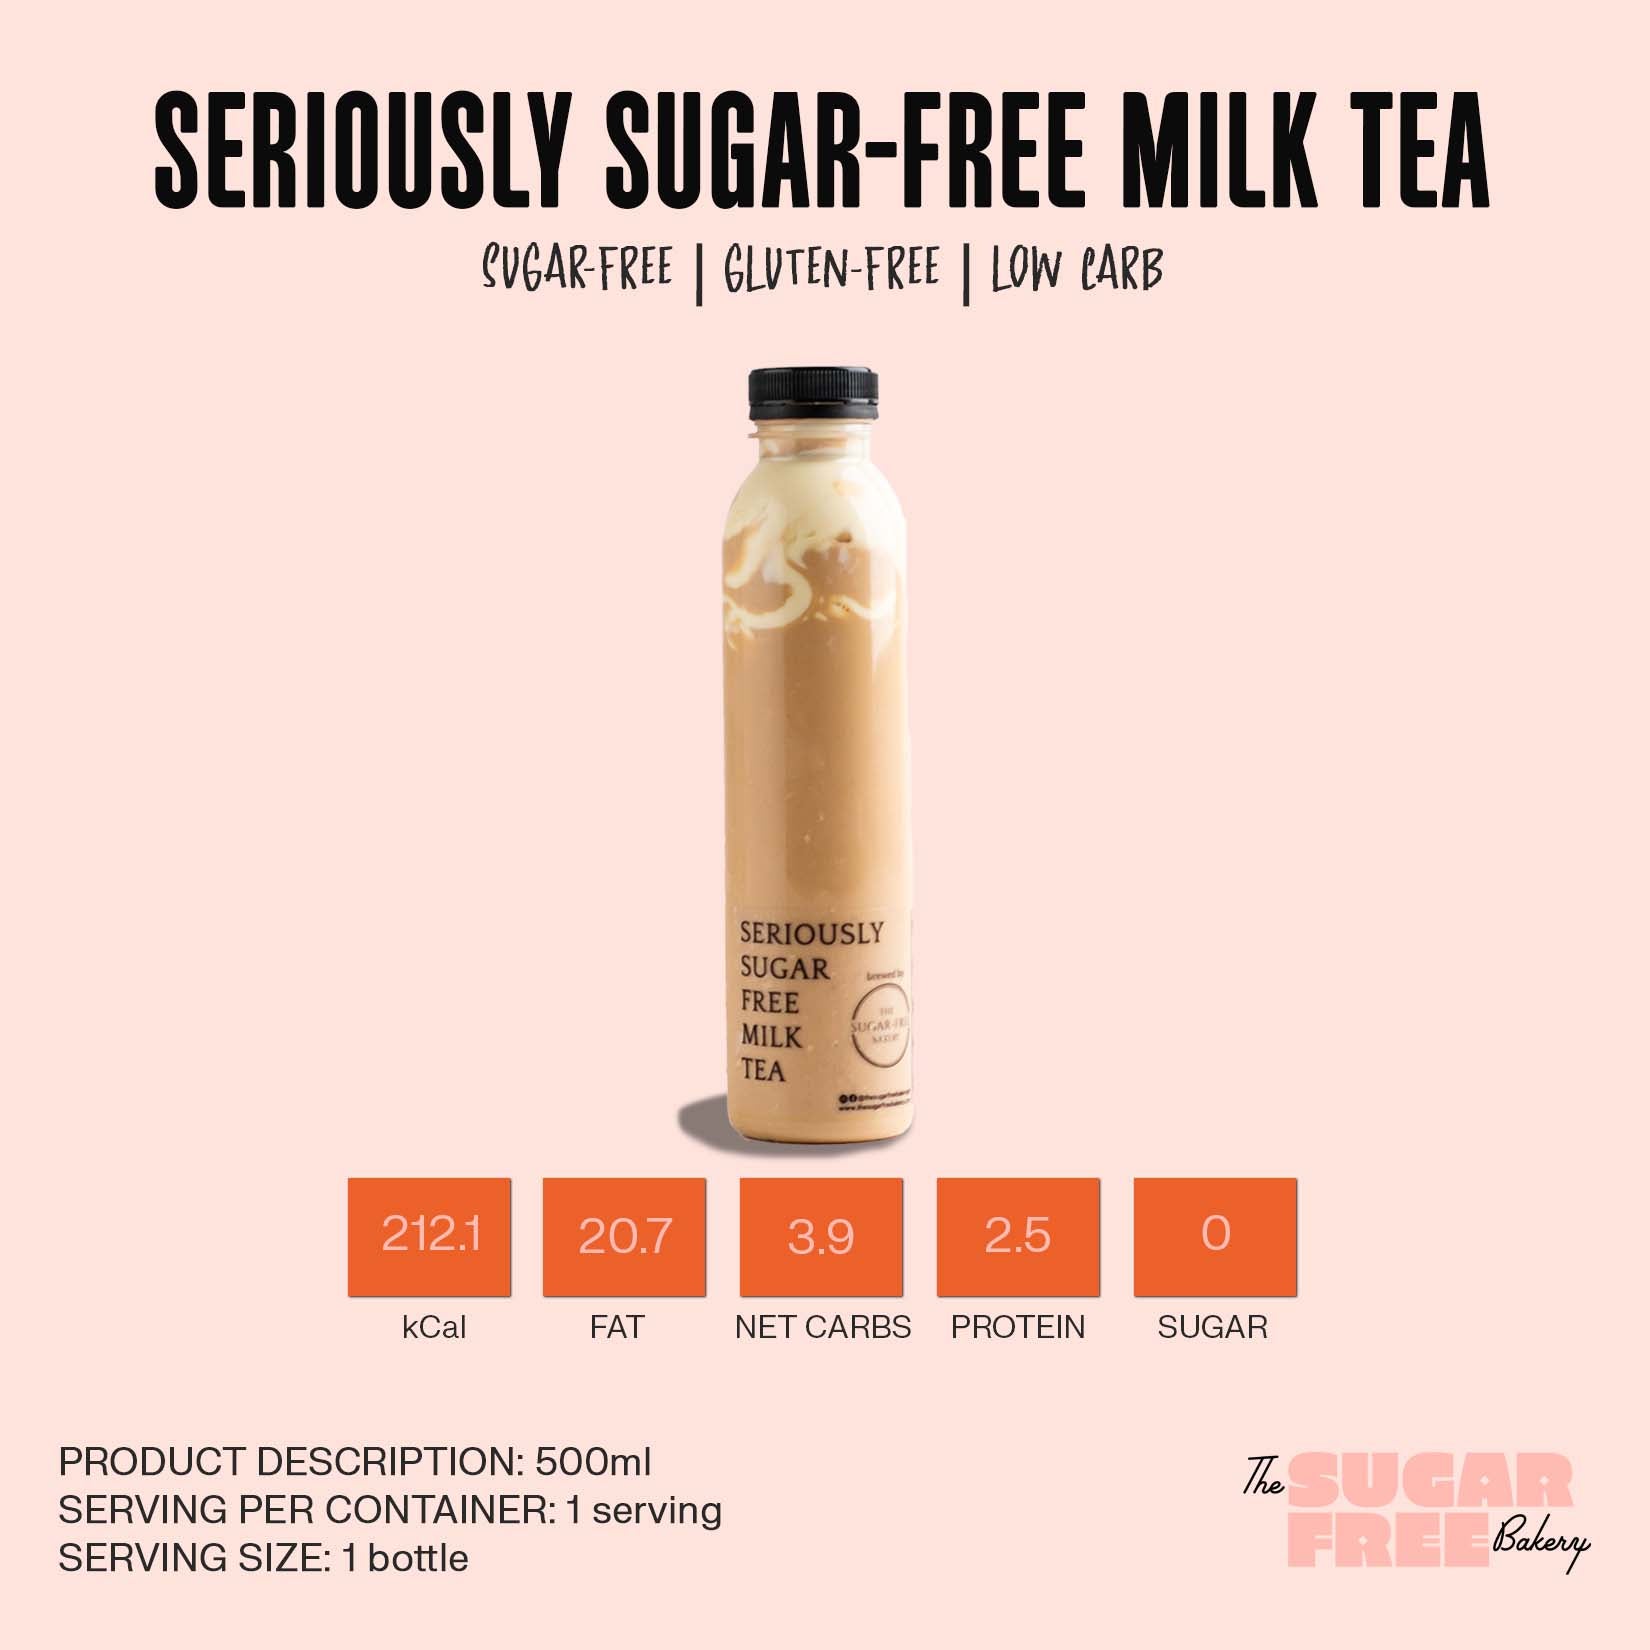 keto milk tea | sugar free milk tea | milk tea | sugar free milk tea manila | the sugar free bakery ph 